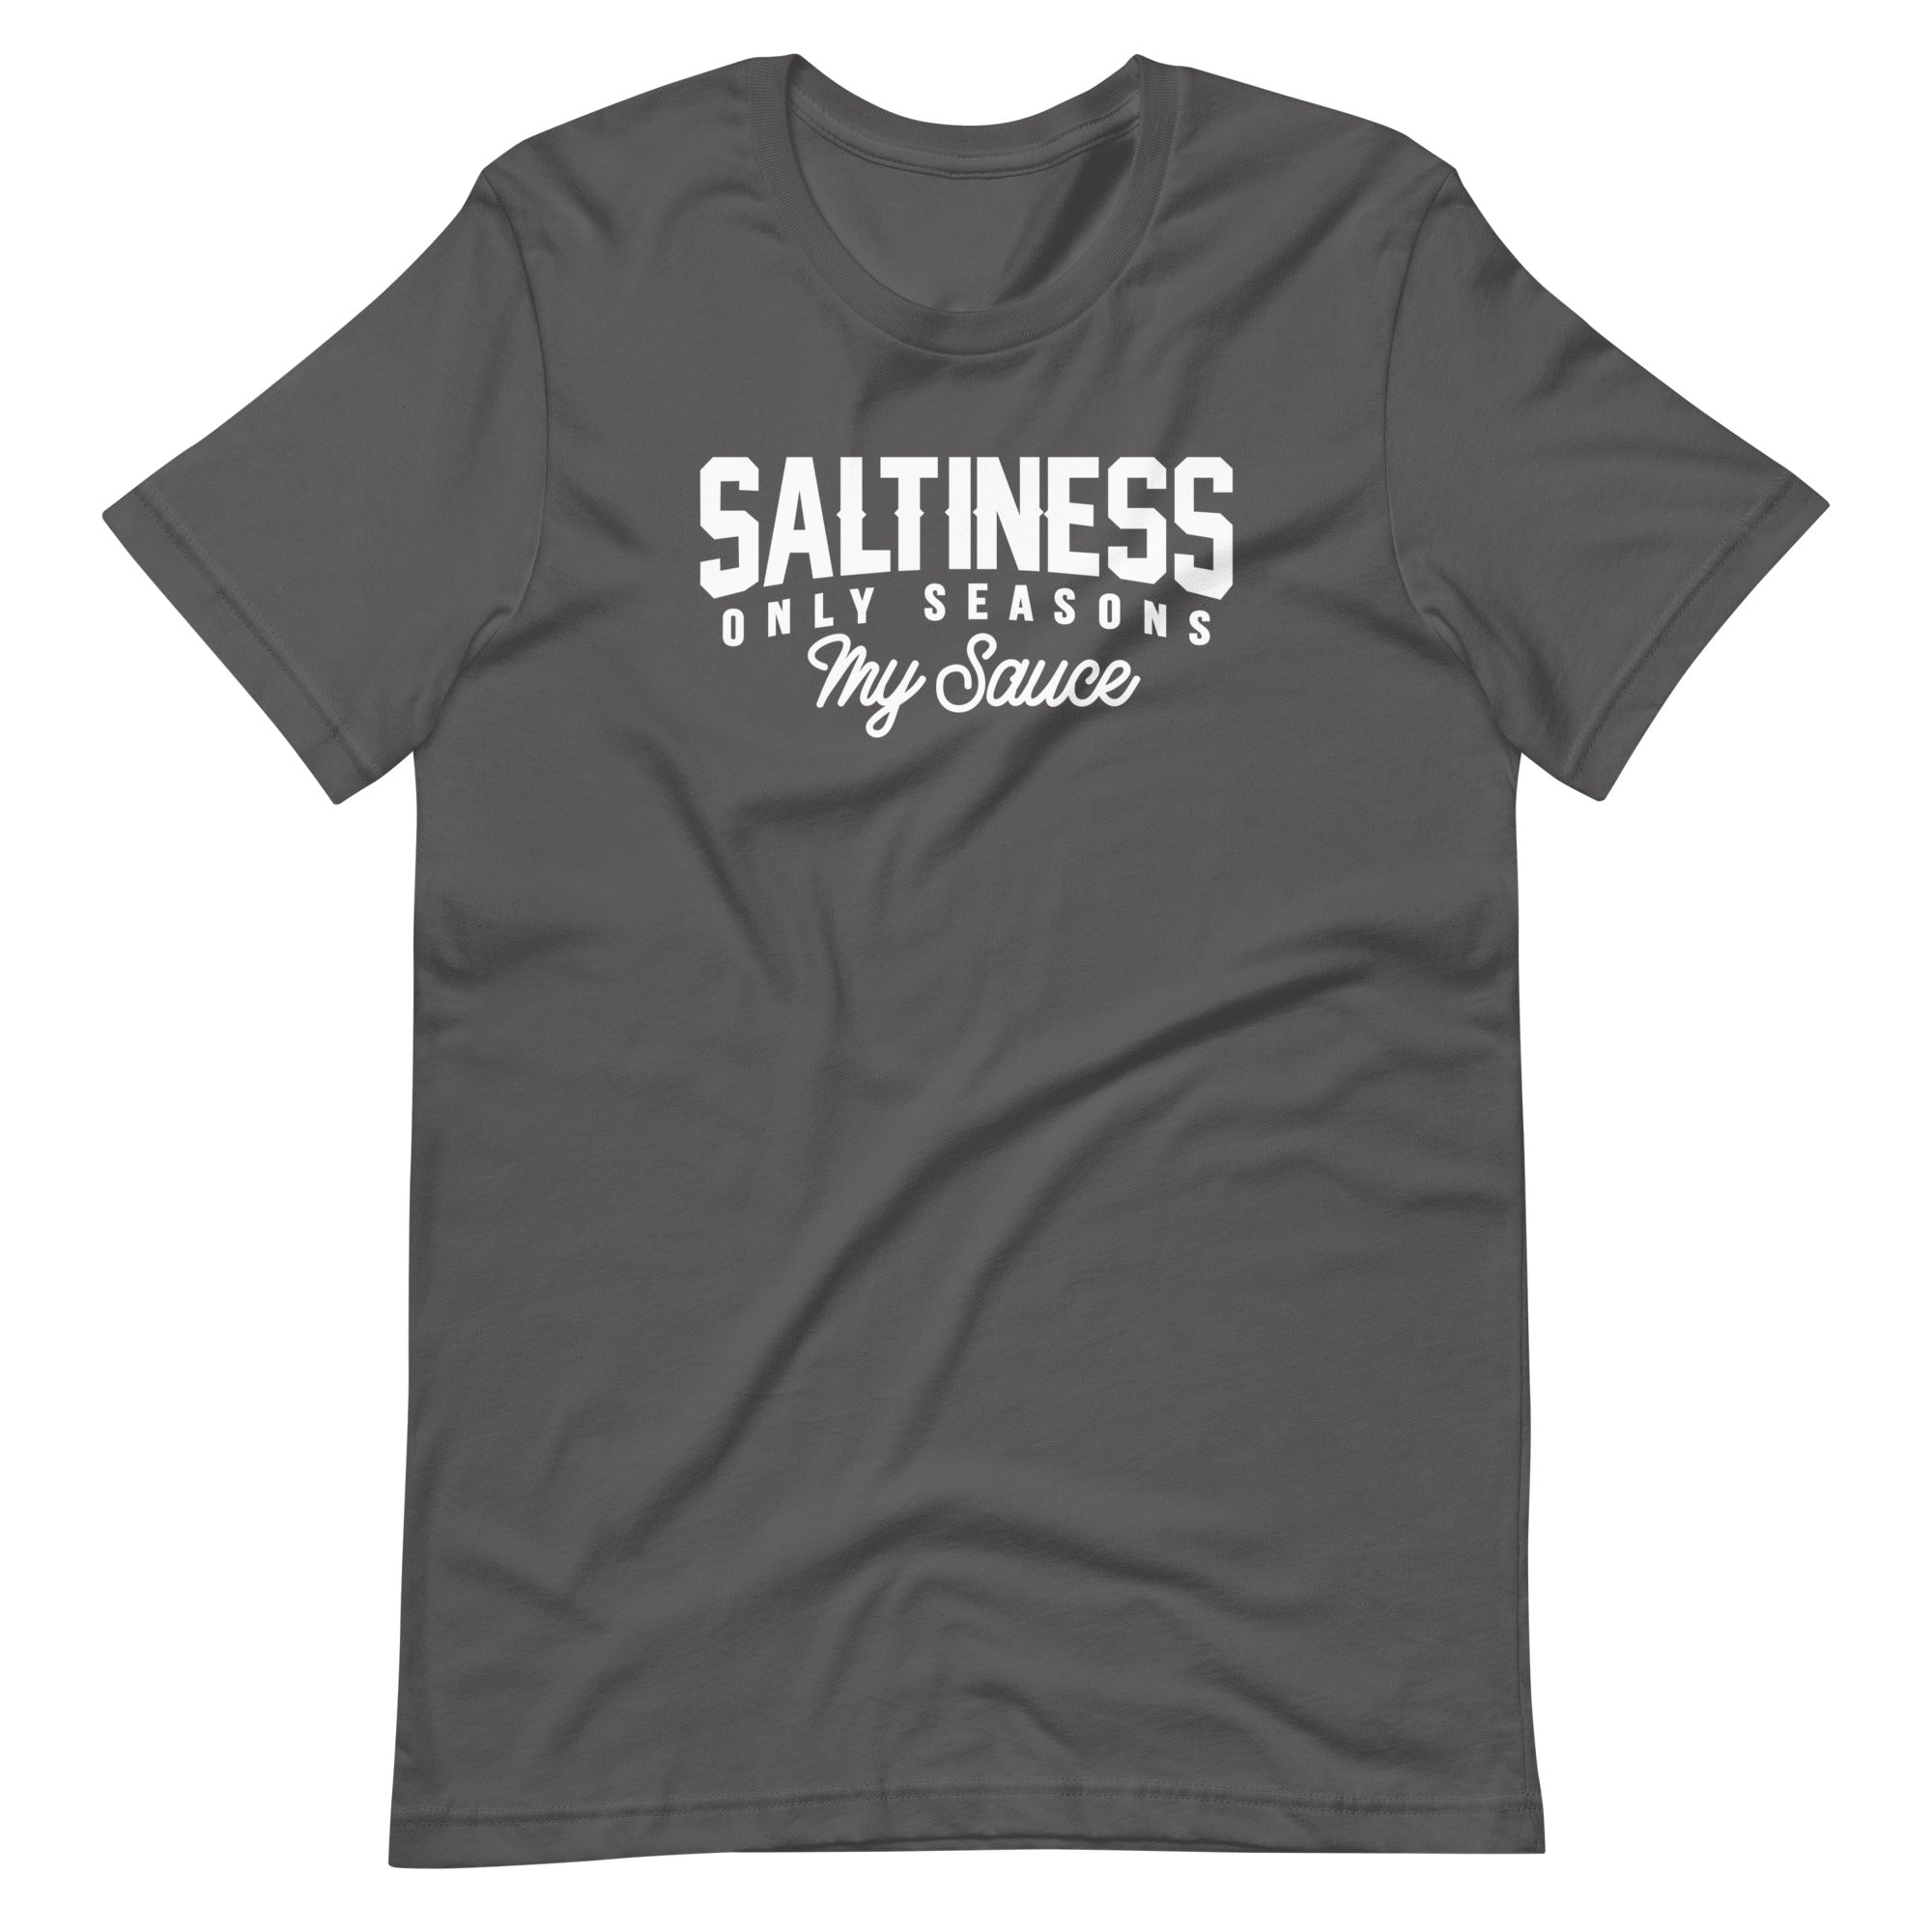 Mike Sorrentino Saltiness Shirt